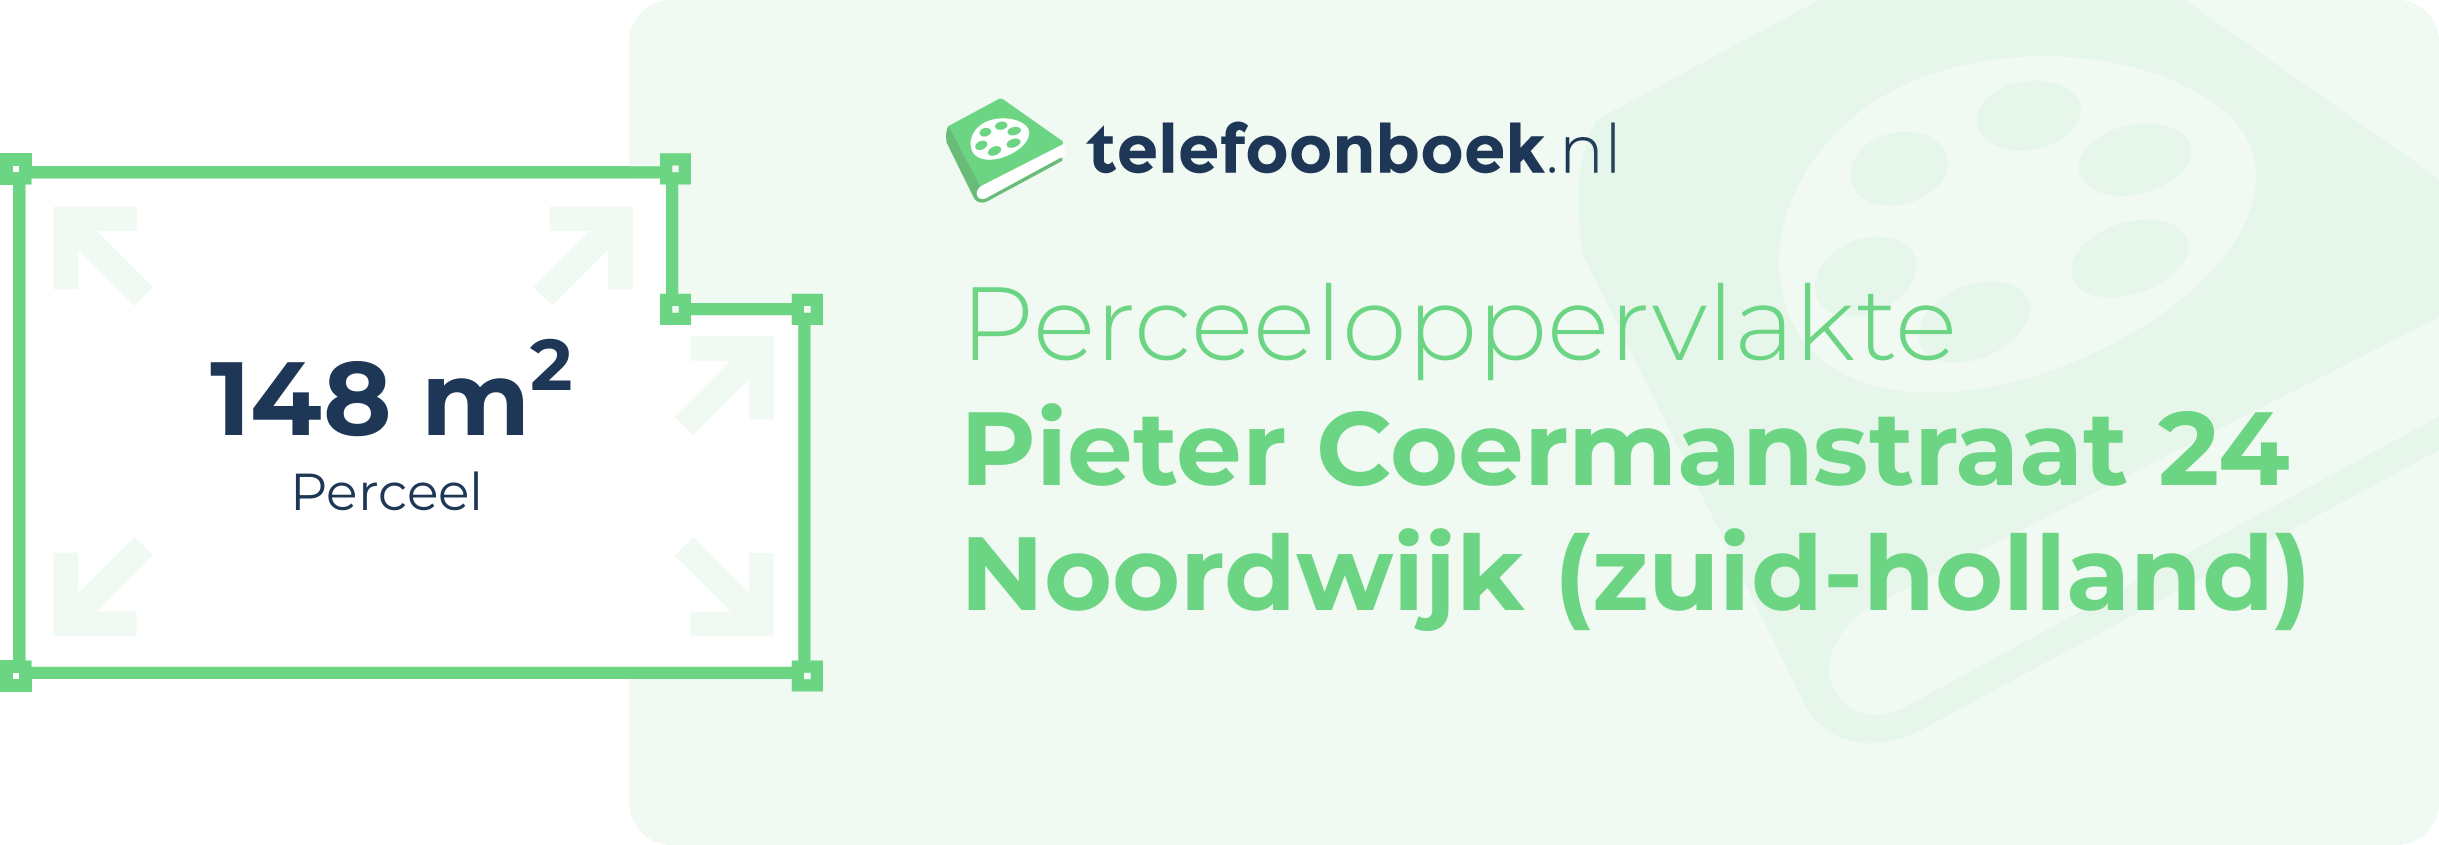 Perceeloppervlakte Pieter Coermanstraat 24 Noordwijk (Zuid-Holland)